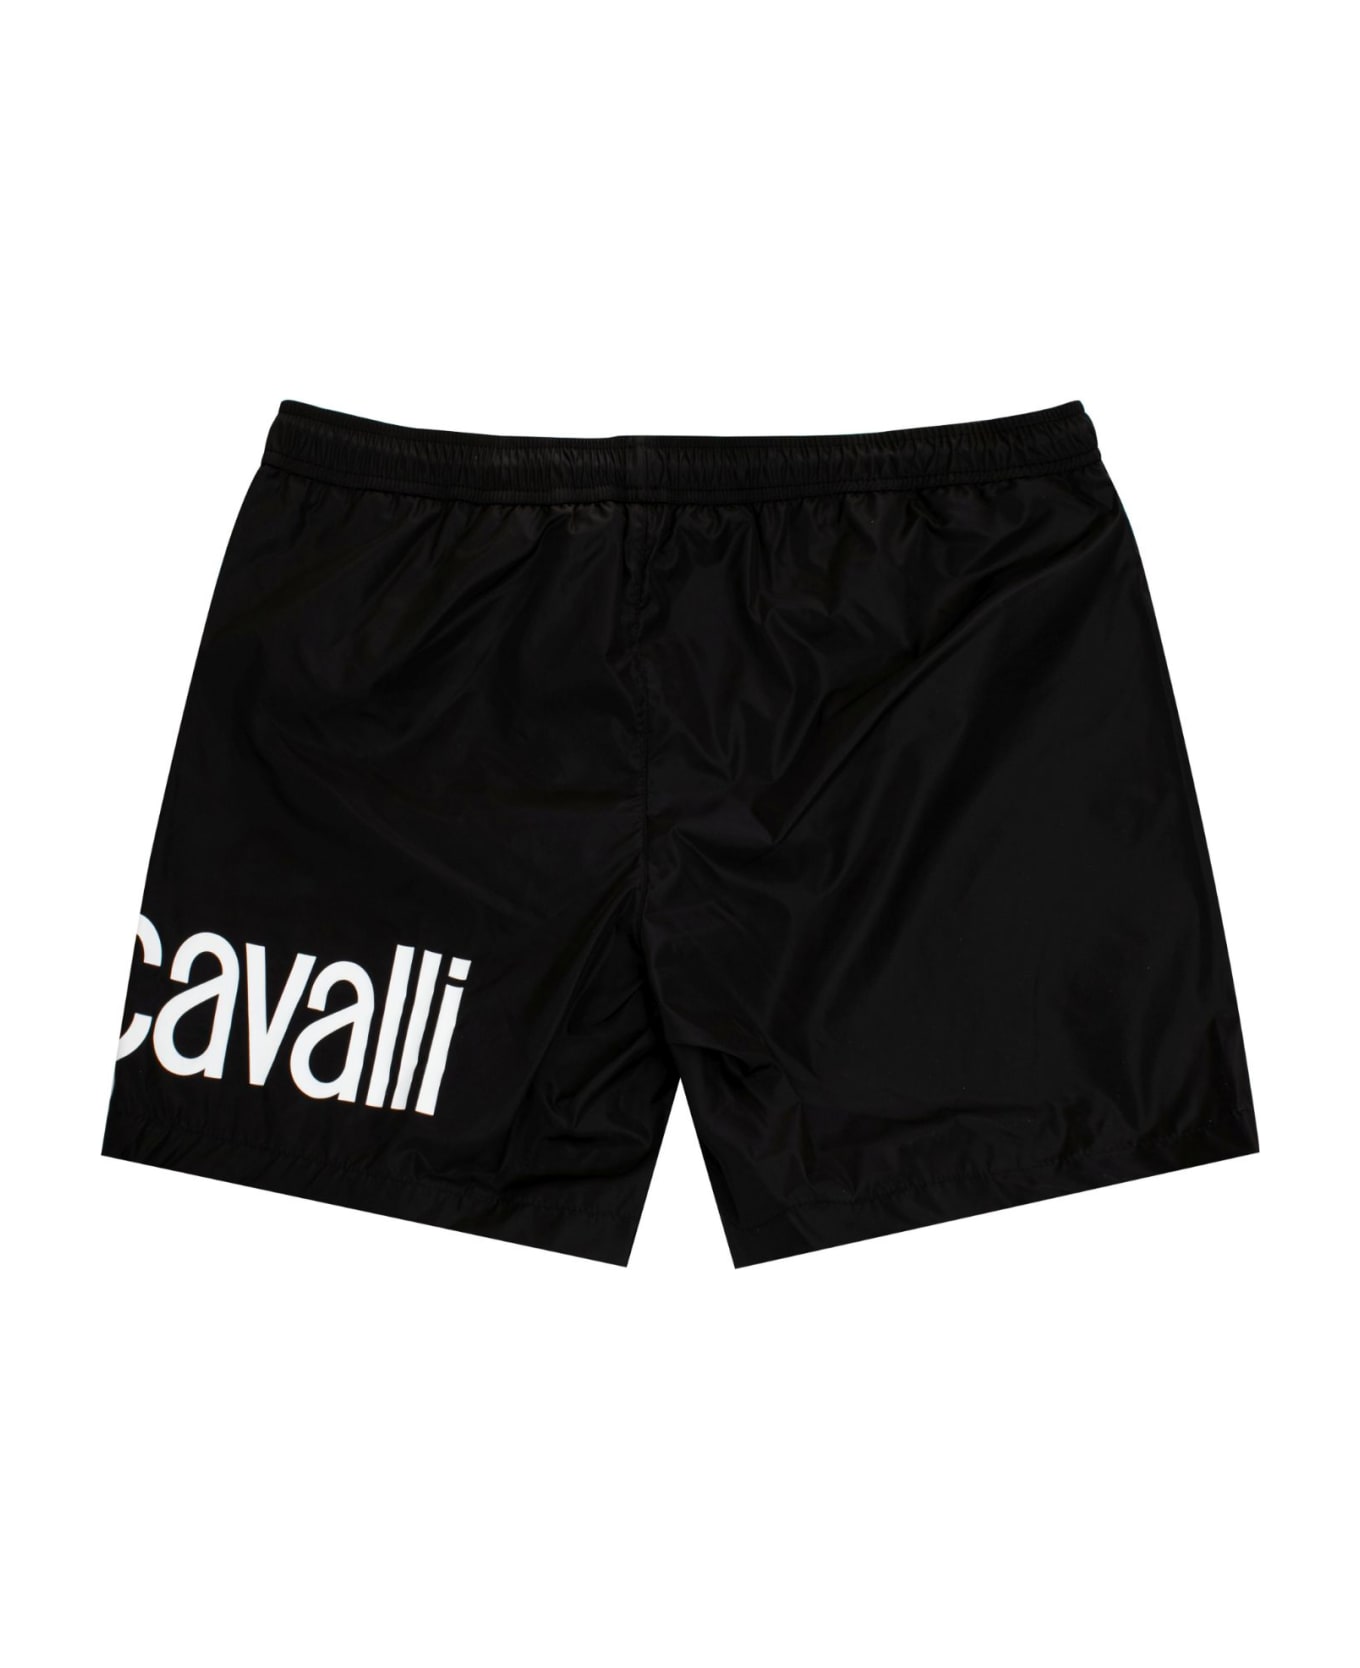 Just Cavalli Beachwear - Black